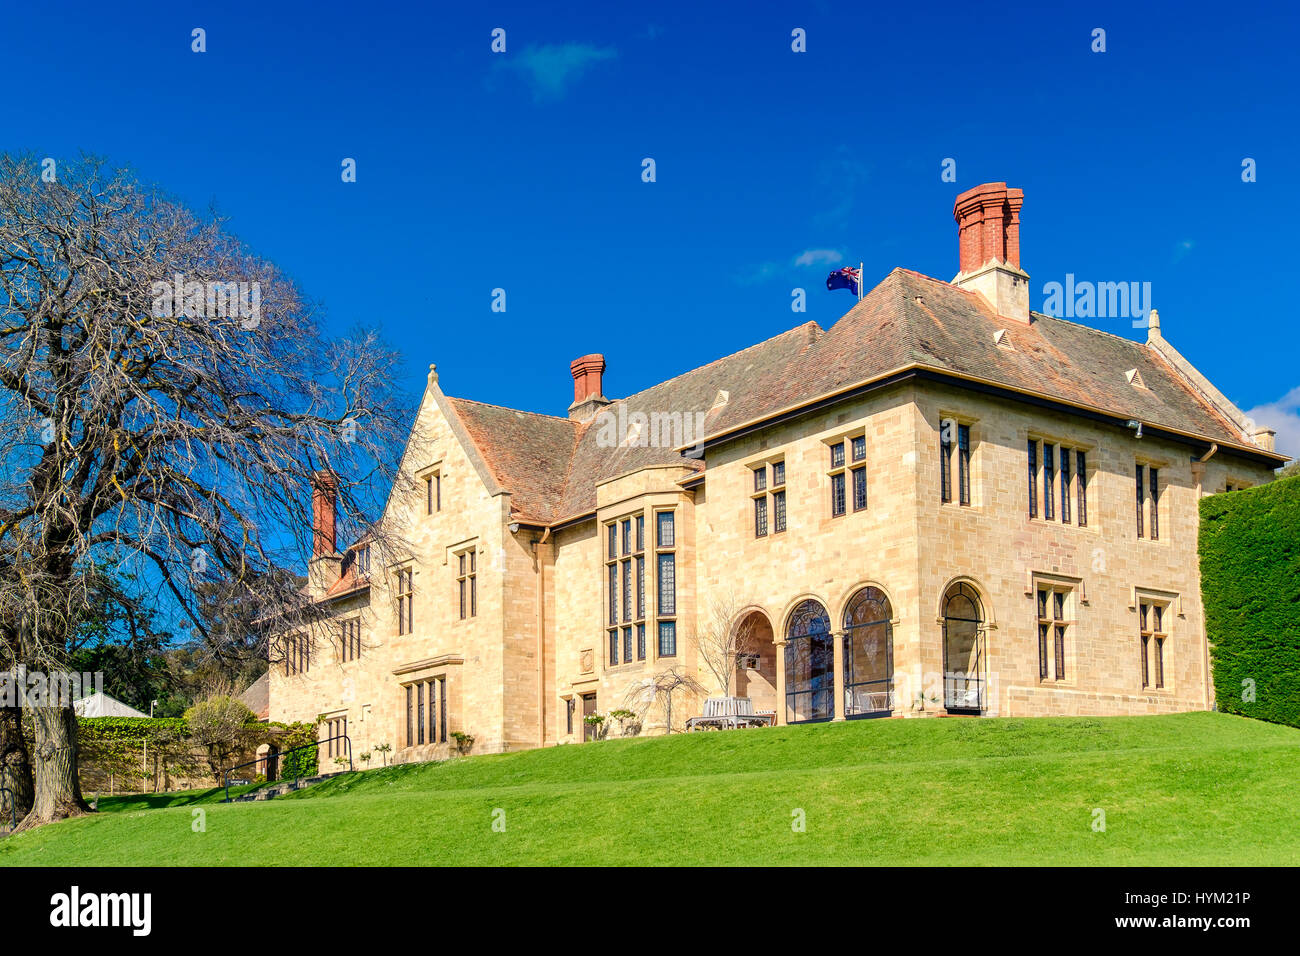 Adelaide, Australie - 23 octobre 2016 : Carrick Hill Estate situé au pied de l'Adelaide Hills. C'est une propriété historique accessible pour publ Banque D'Images